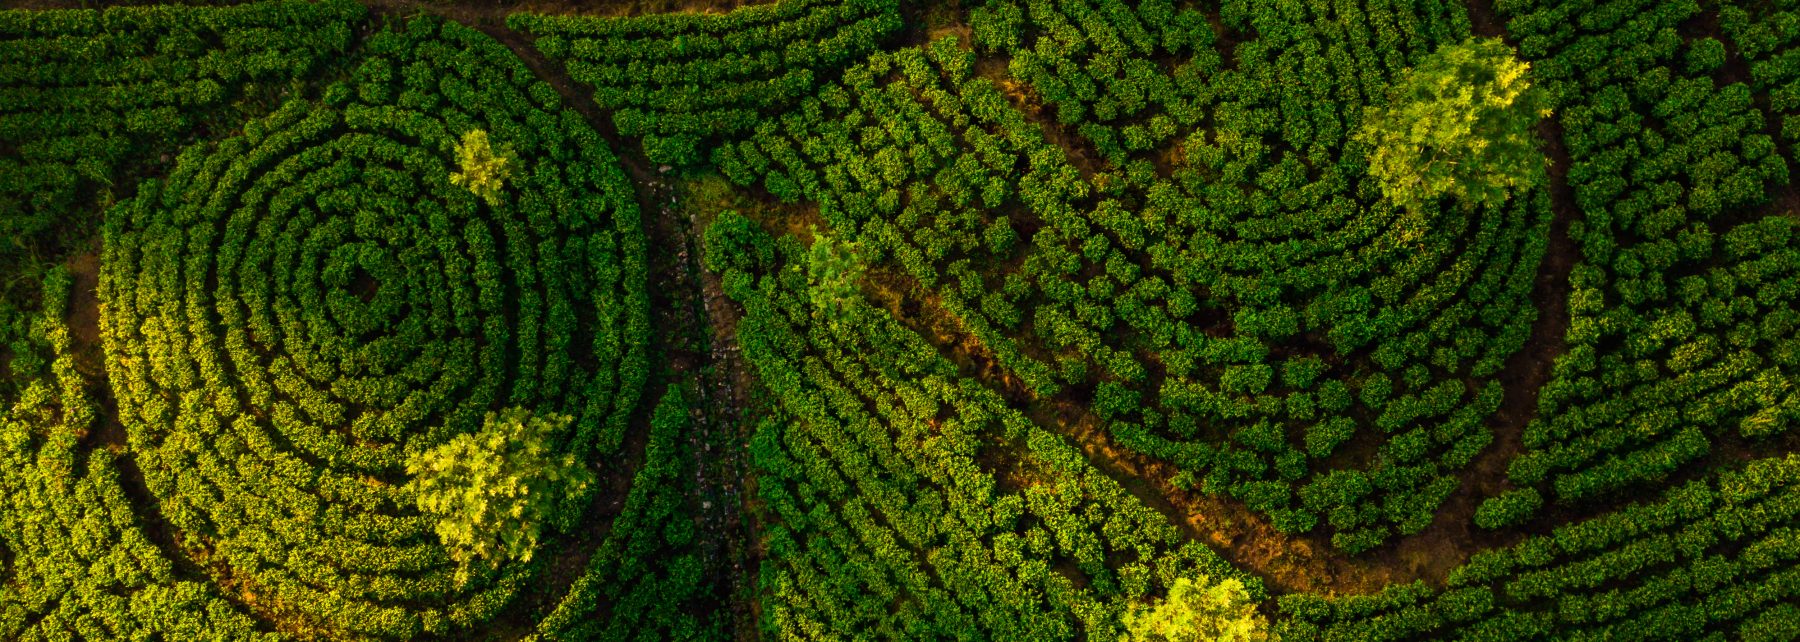 Tea plantation in Nuwara Eliya at sunrise, Sri Lanka. Aerial view